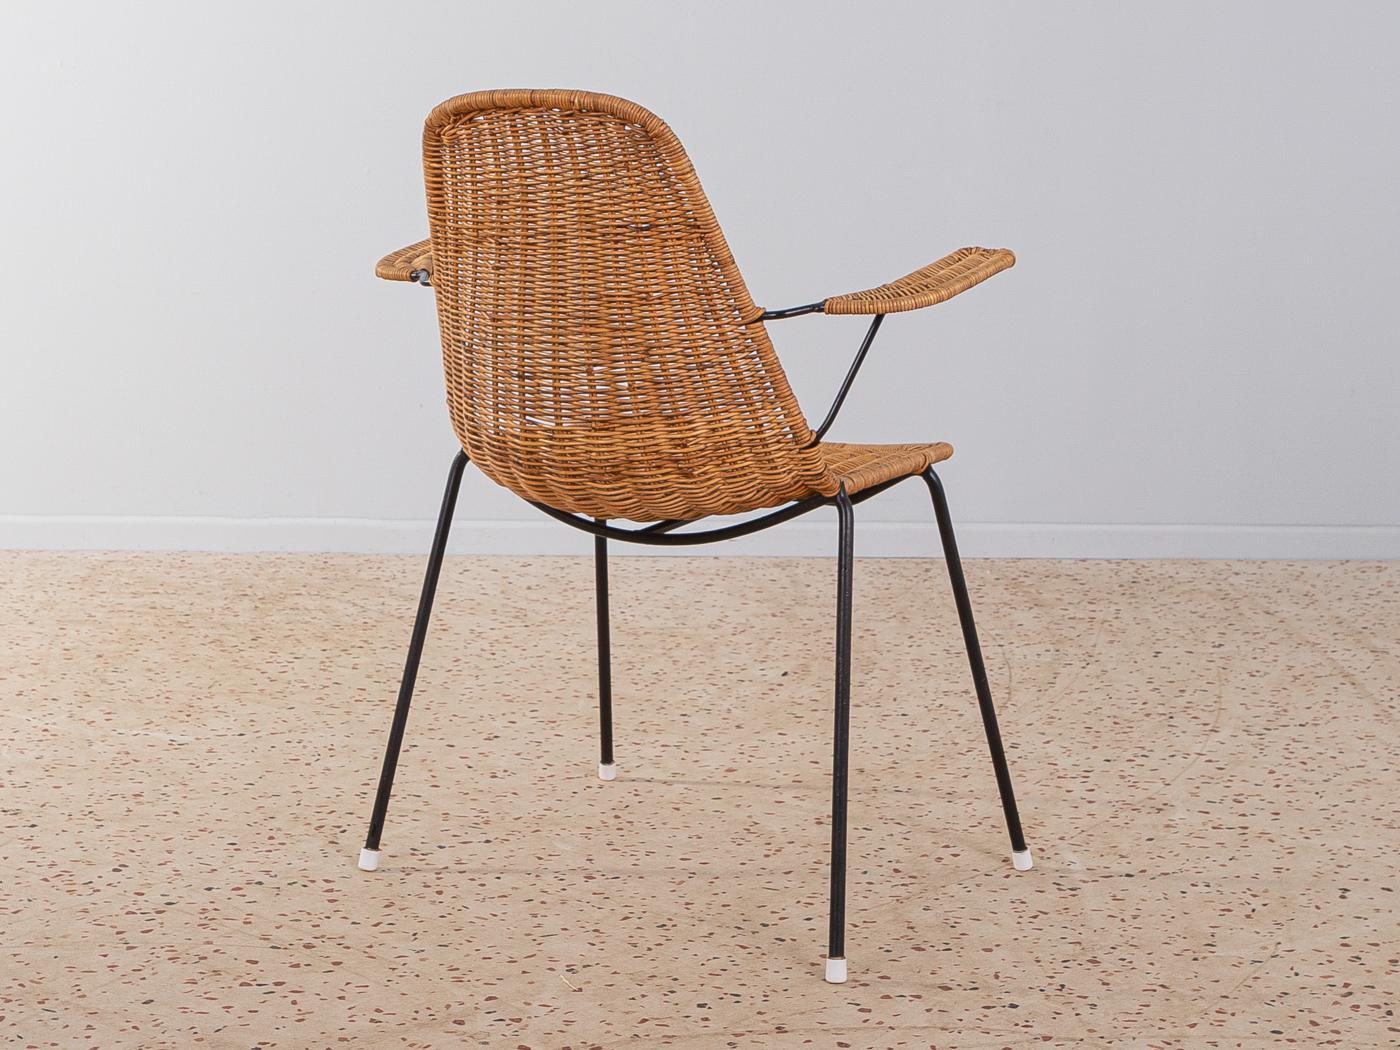 Italian Campo e Graffi wicker chair from 1950s